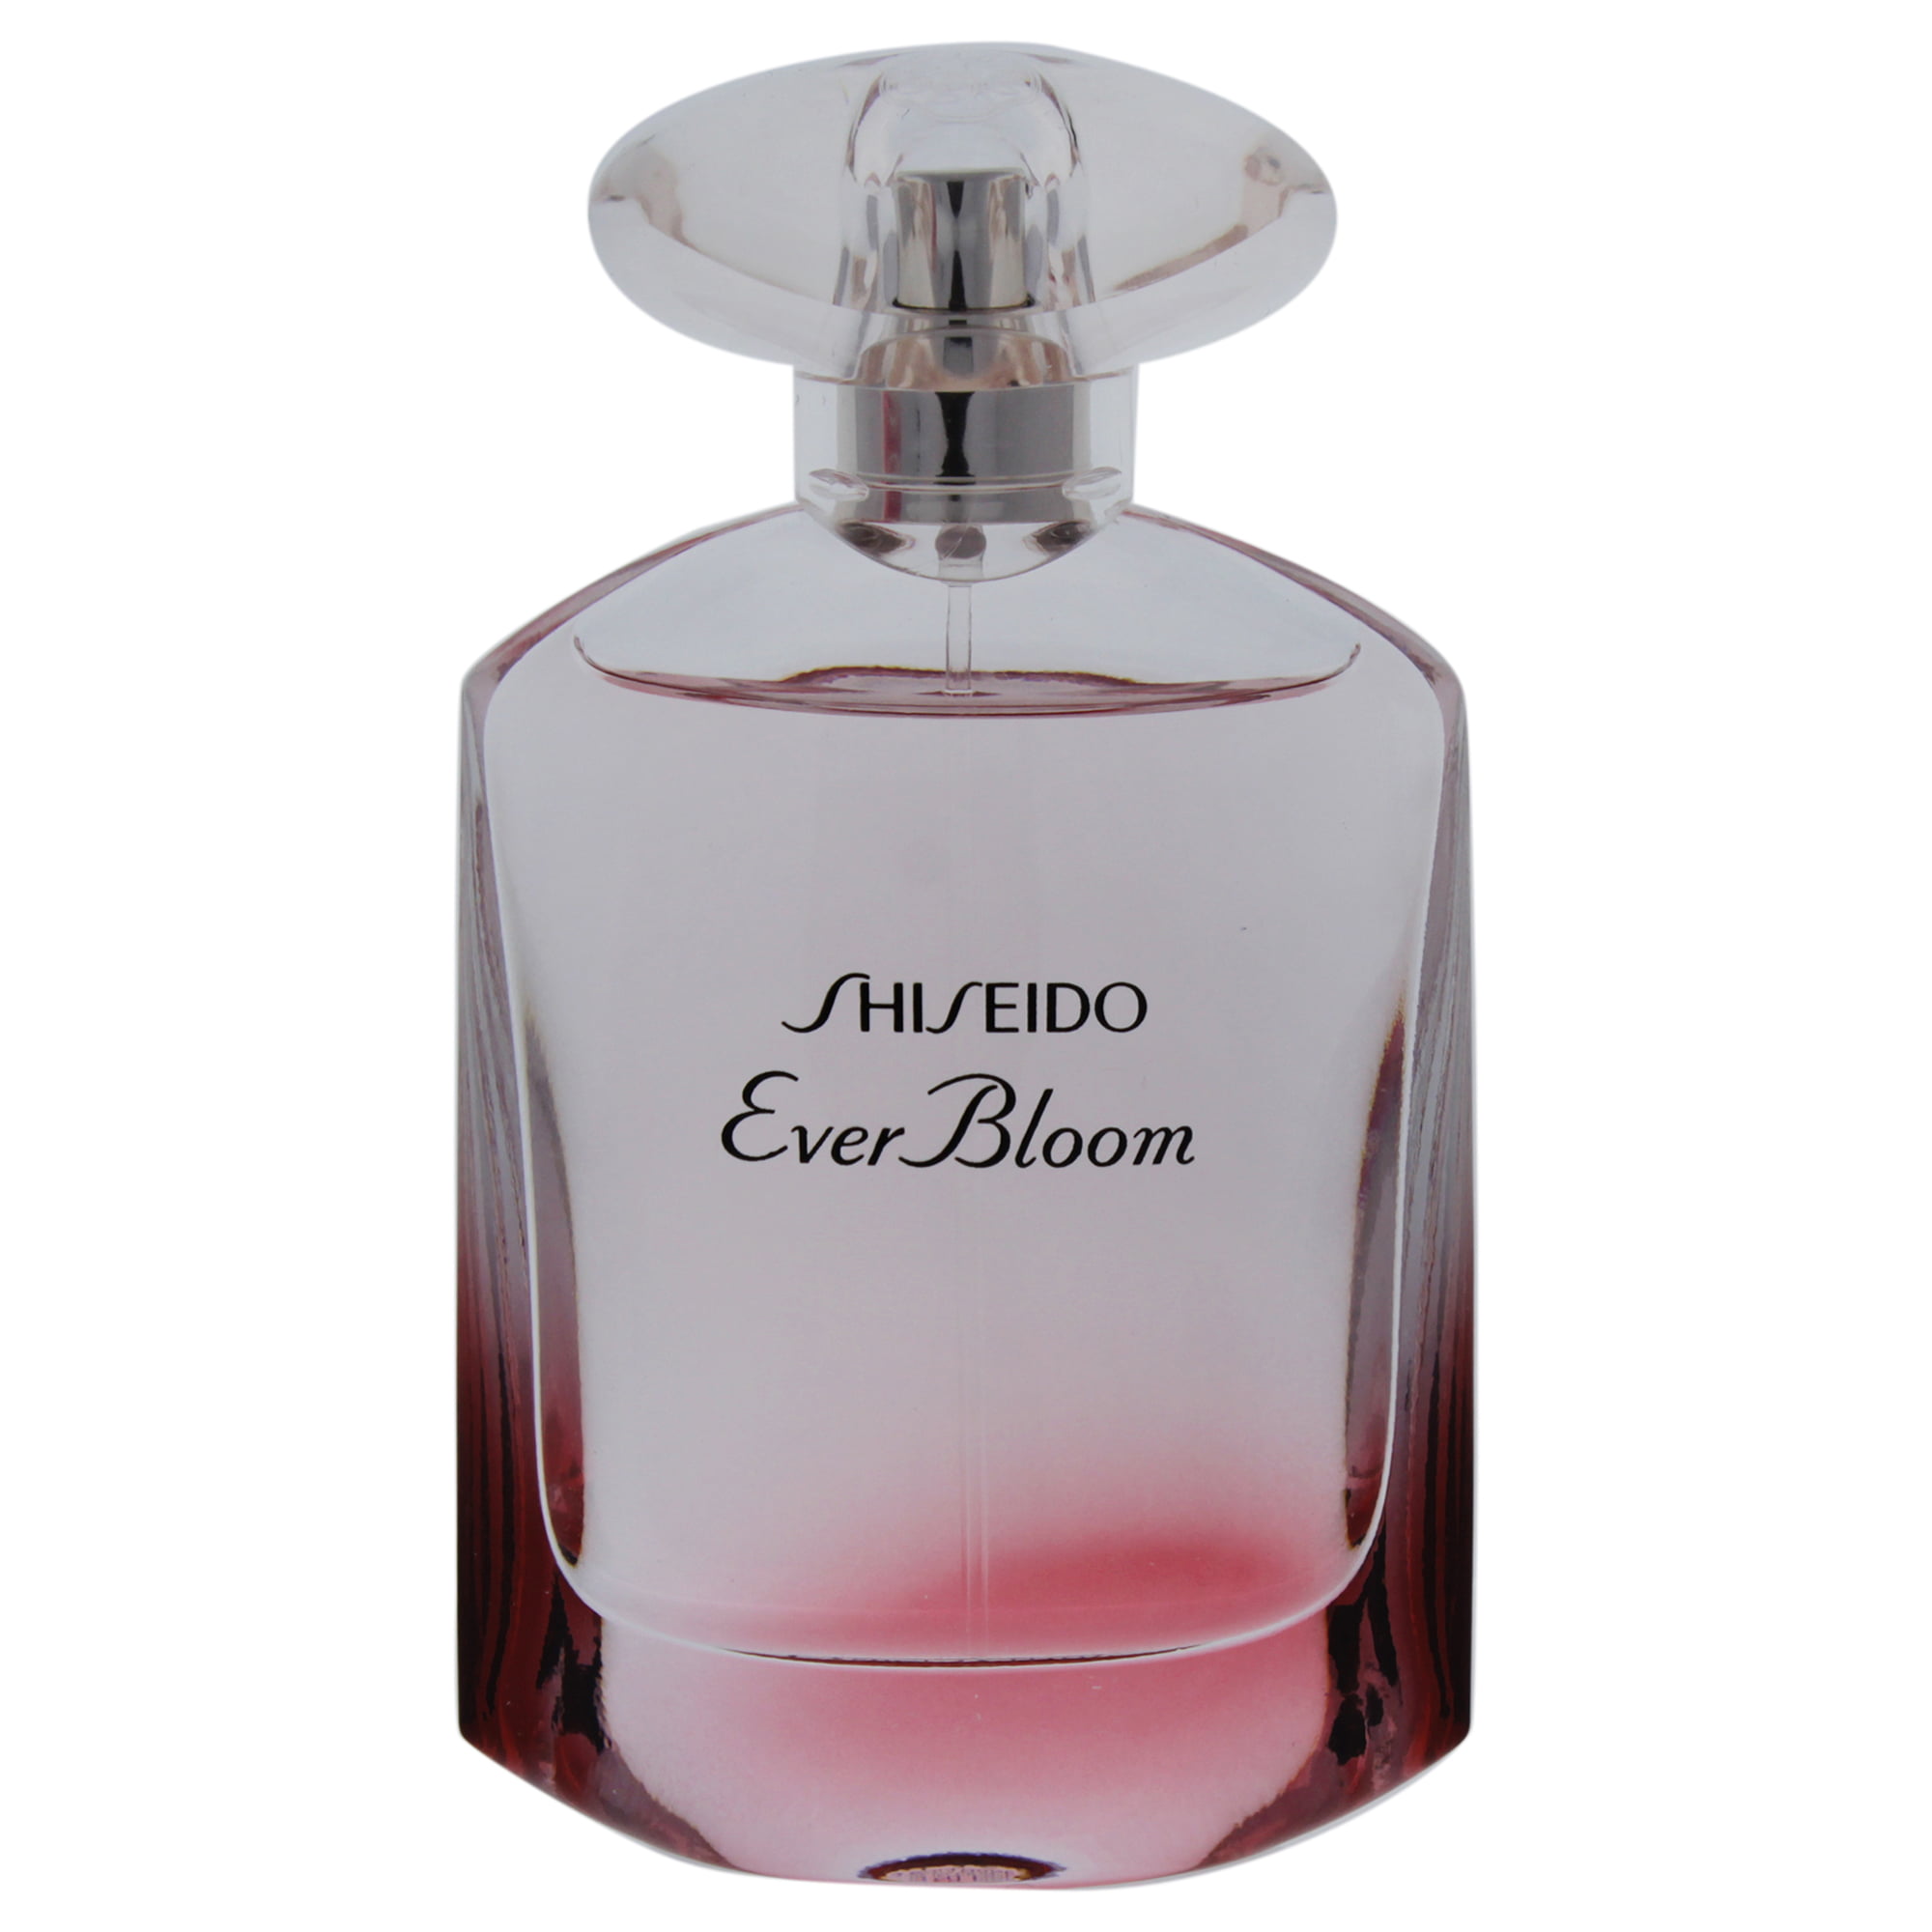 Shiseido Ever Bloom Eau De Parfum Spray 1.6 oz - Walmart.com